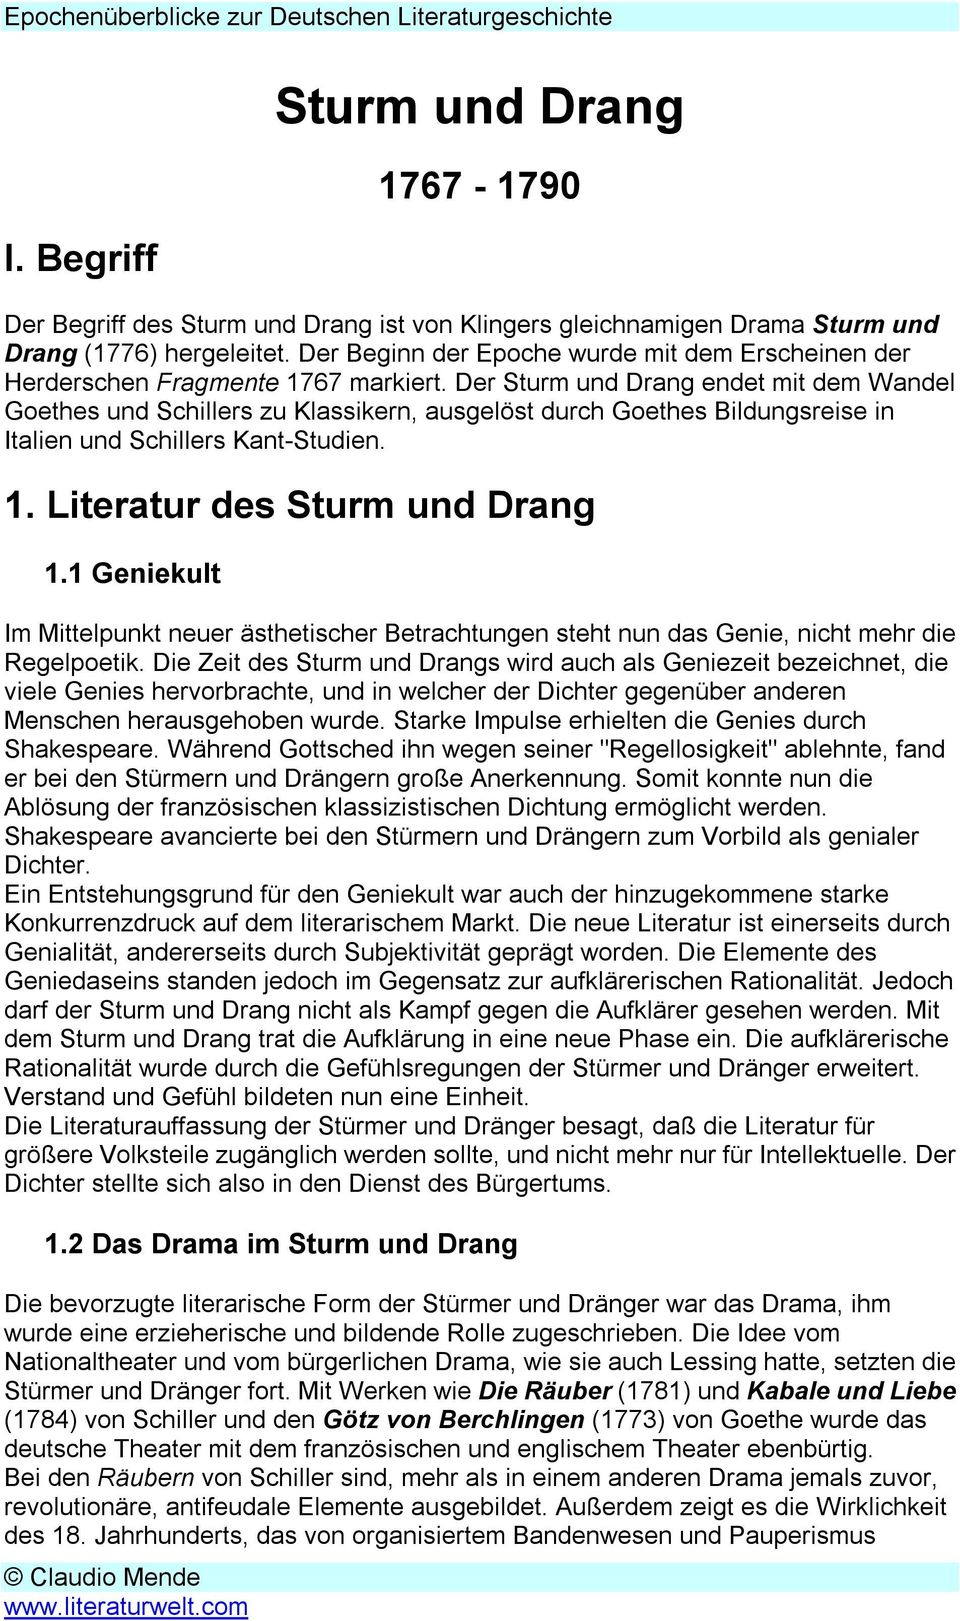 Der Sturm und Drang endet mit dem Wandel Goethes und Schillers zu Klassikern, ausgelöst durch Goethes Bildungsreise in Italien und Schillers Kant-Studien. 1. Literatur des Sturm und Drang 1.